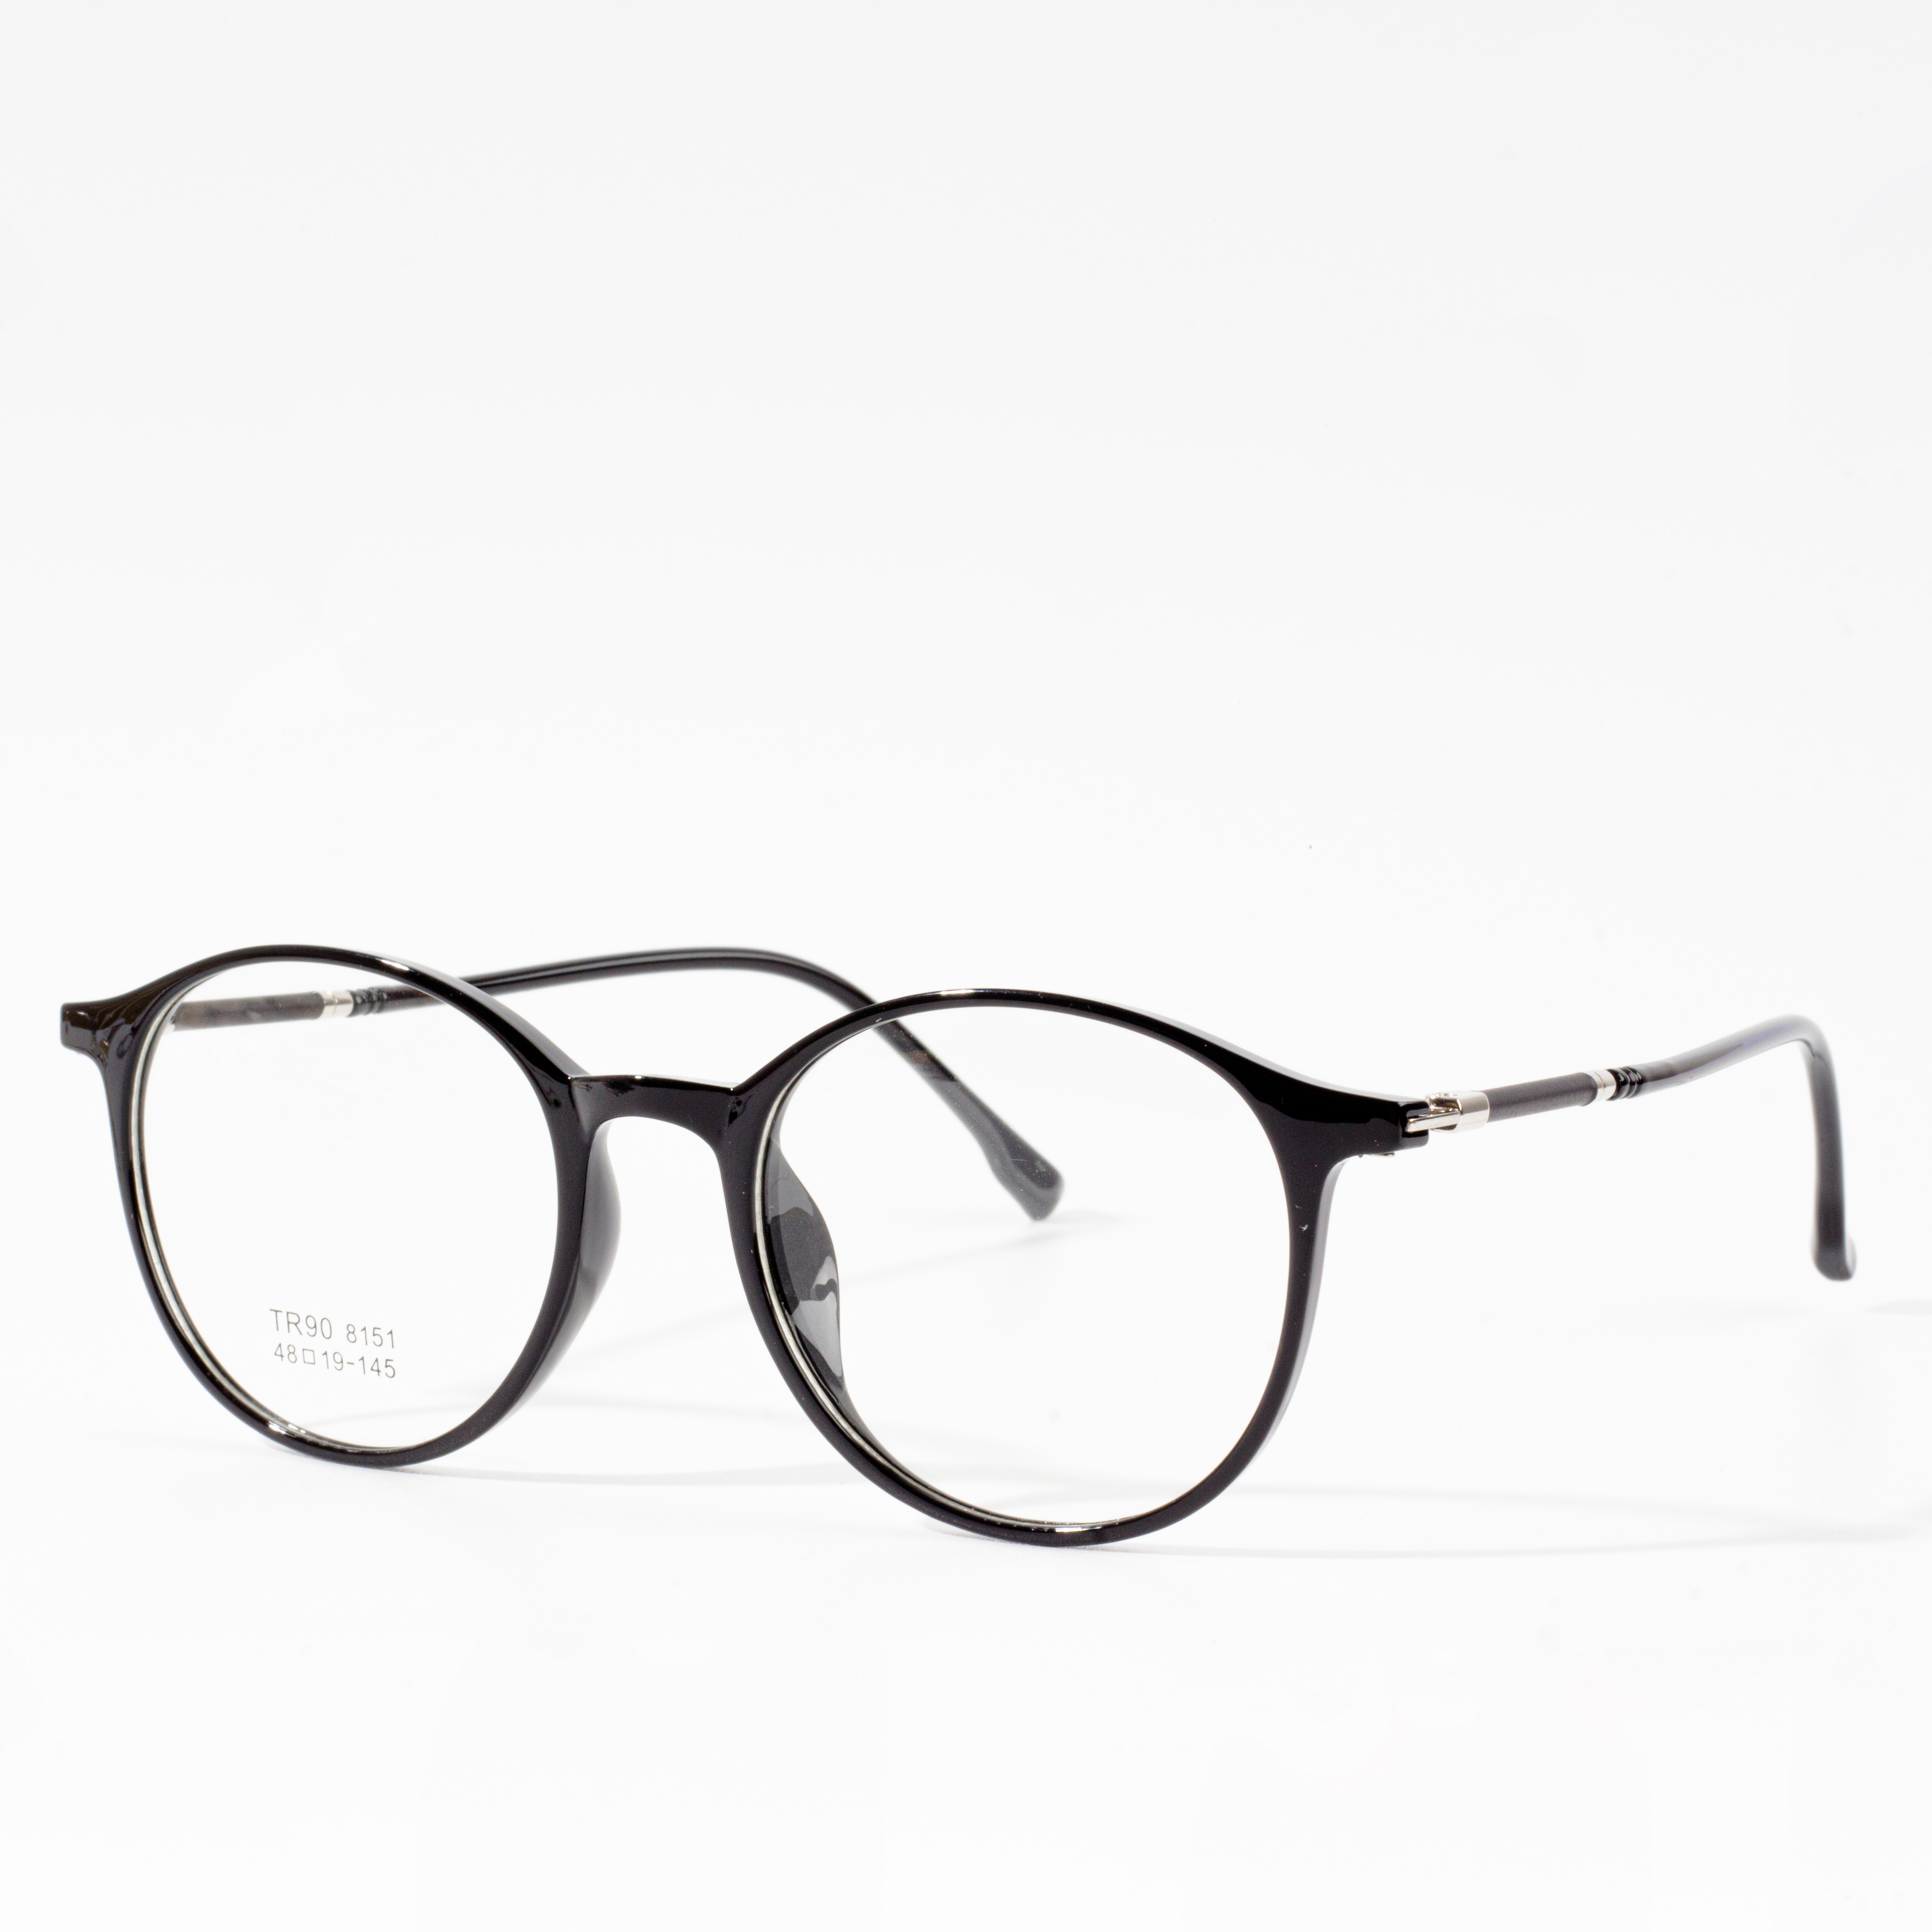 Designermonturen voor heren en dames - Eyeglasses.com 广告· https://www.eyeglasses.com/ (888) 896-3885 Shop vandaag nog designermonturen van de beste wereldwijde brillenmerken voor de helft van de verkoopprijzen.